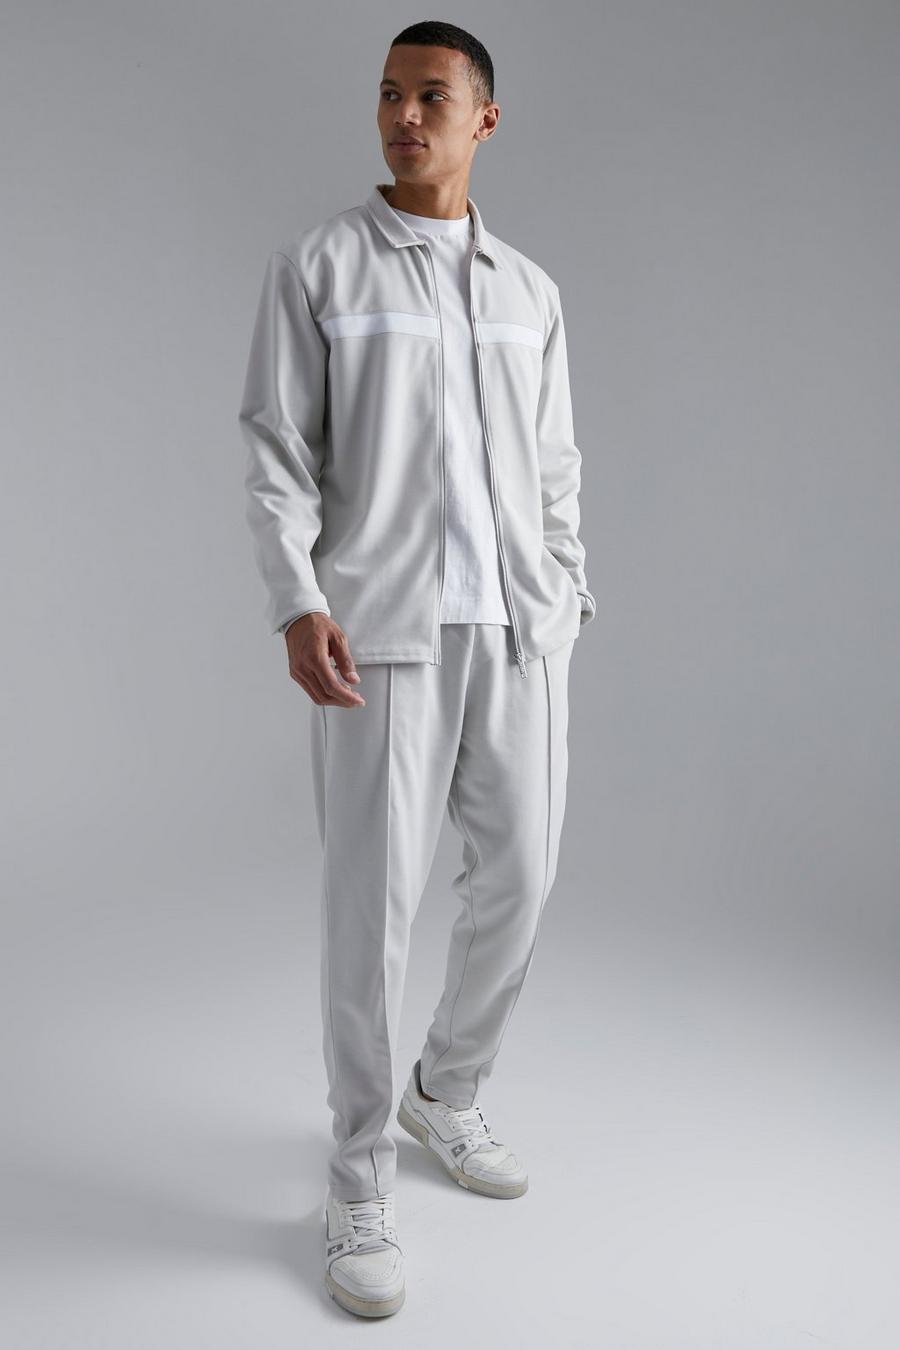 אפור grey סט של מכנסי טרנינג בגזרת קרסול צרה וחולצה בסגנון הרינגטון בגזרה צרה, לגברים גבוהים